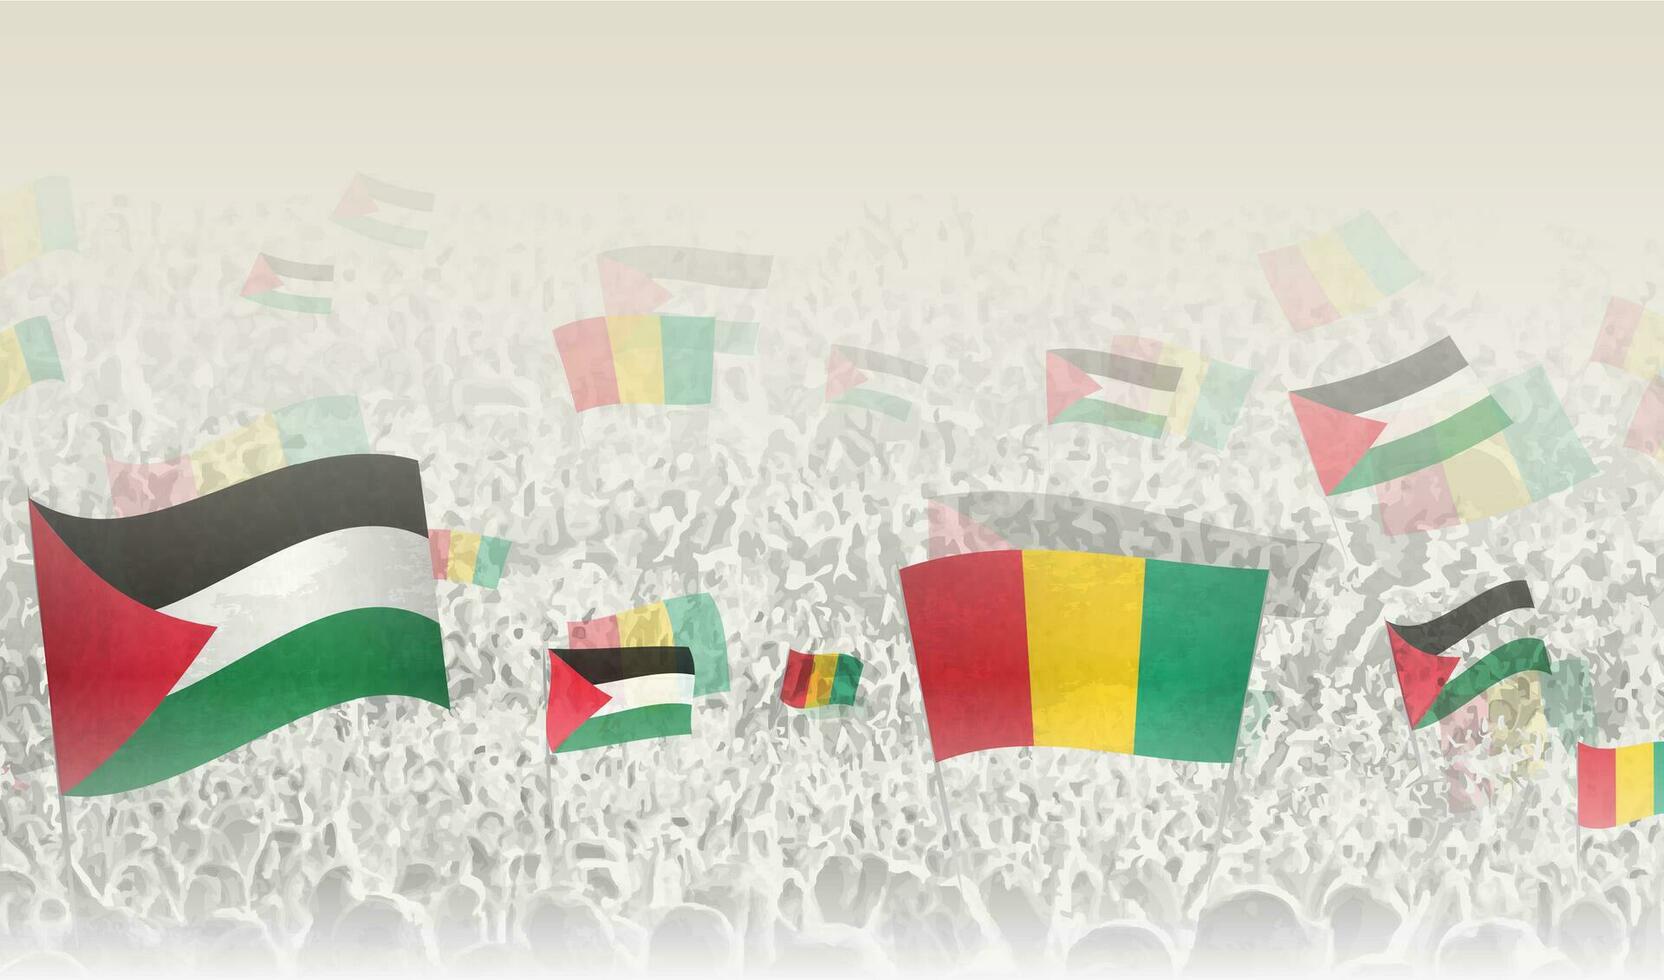 Palestine et Guinée drapeaux dans une foule de applaudissement personnes. vecteur